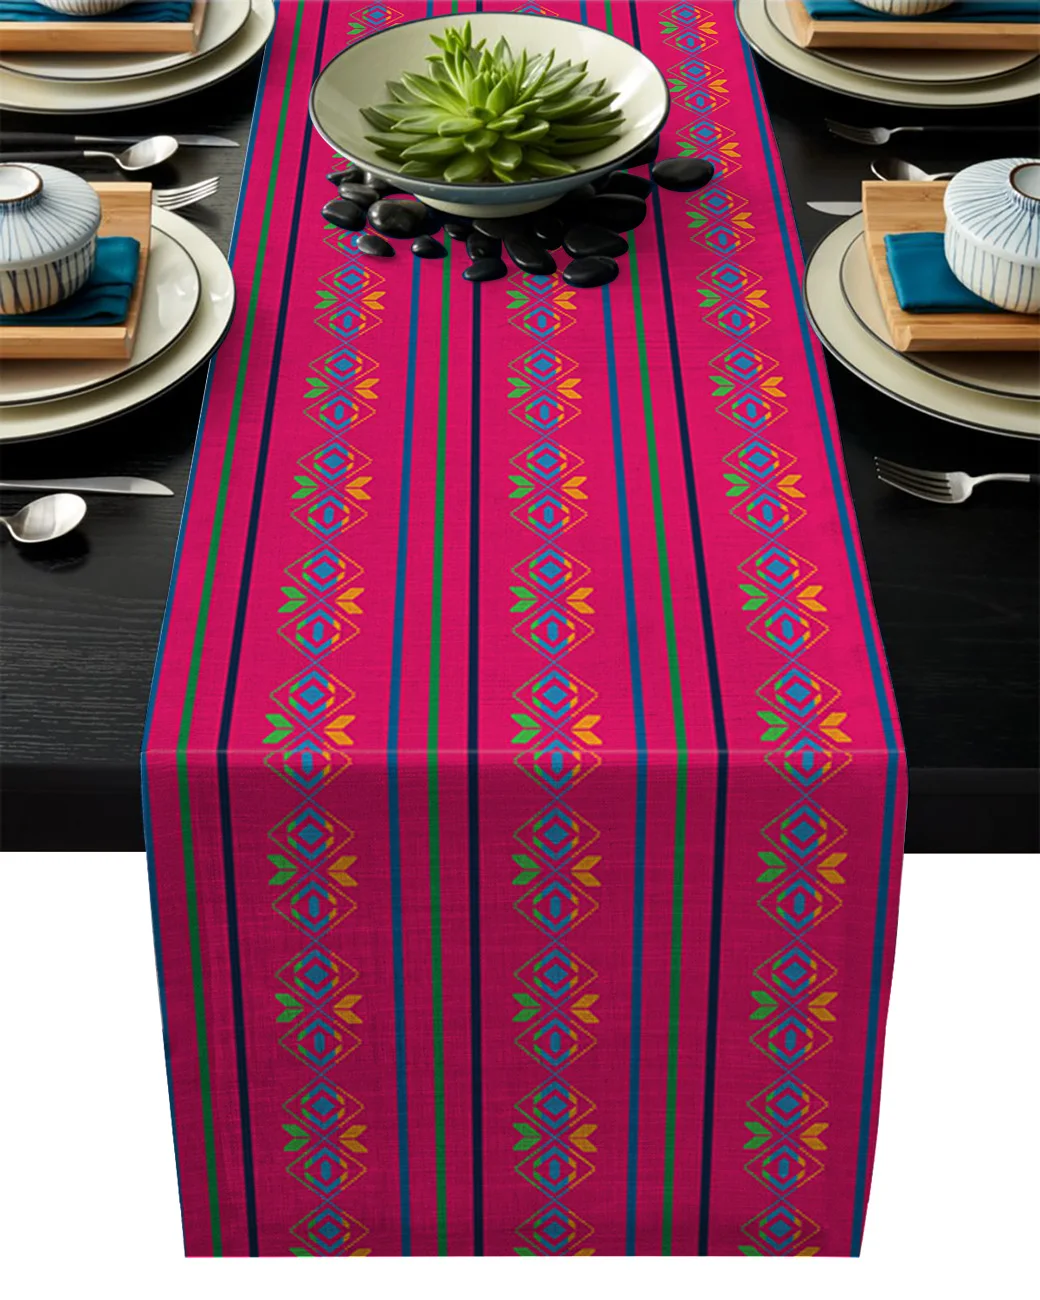 Posavasos para mesa, manteles individuales modernos con diseño de rayas geométricas, étnicas y mejicanas, decoración de Hotel, cocina y fiesta de bodas